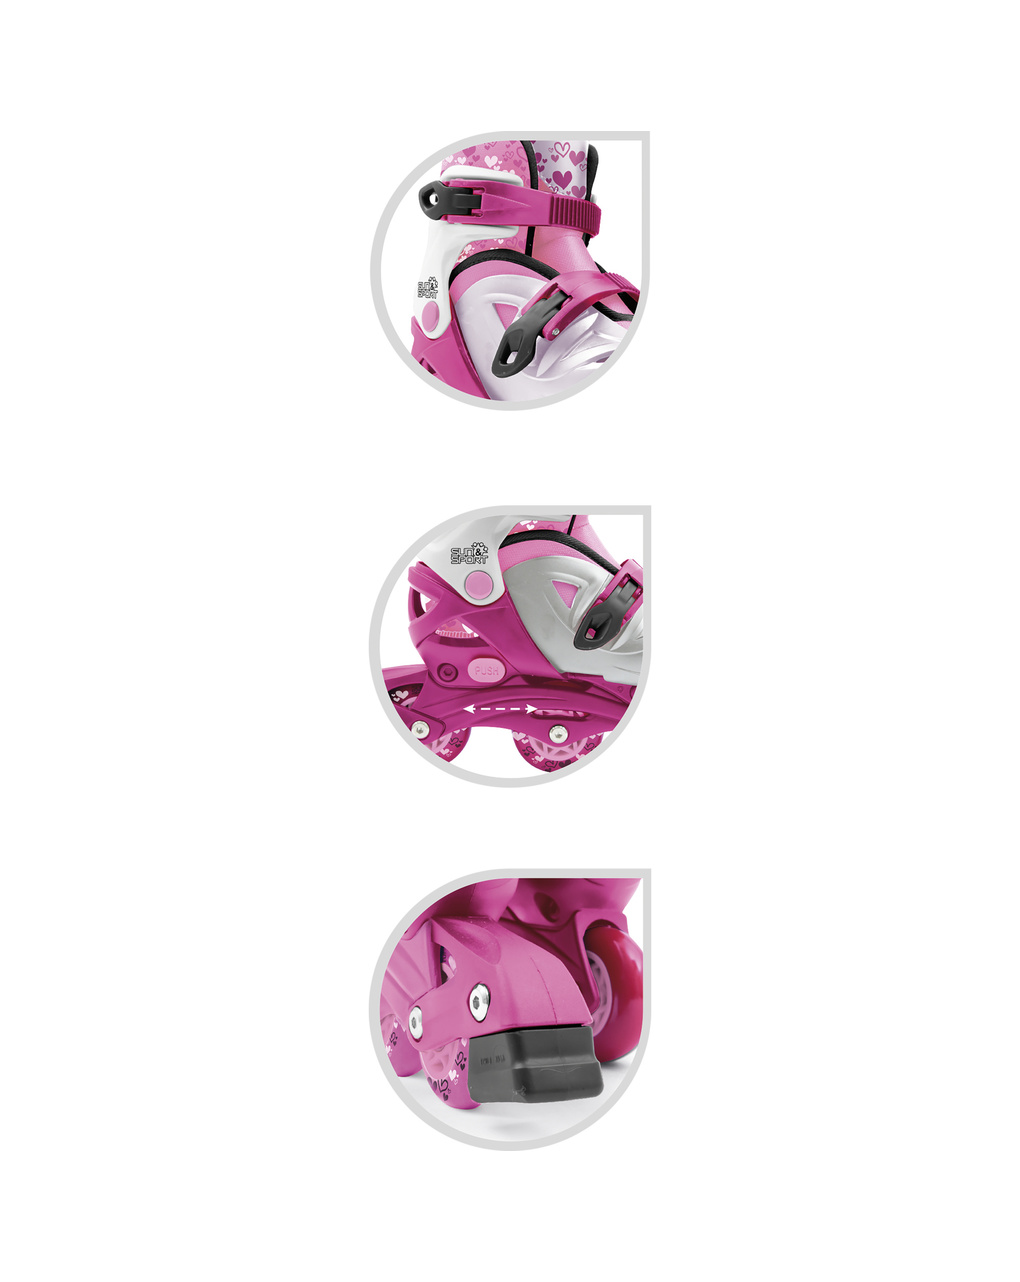 Pattini in linea 4 ruote rosa - taglia 31-35 - sun&sport - Sun&Sport